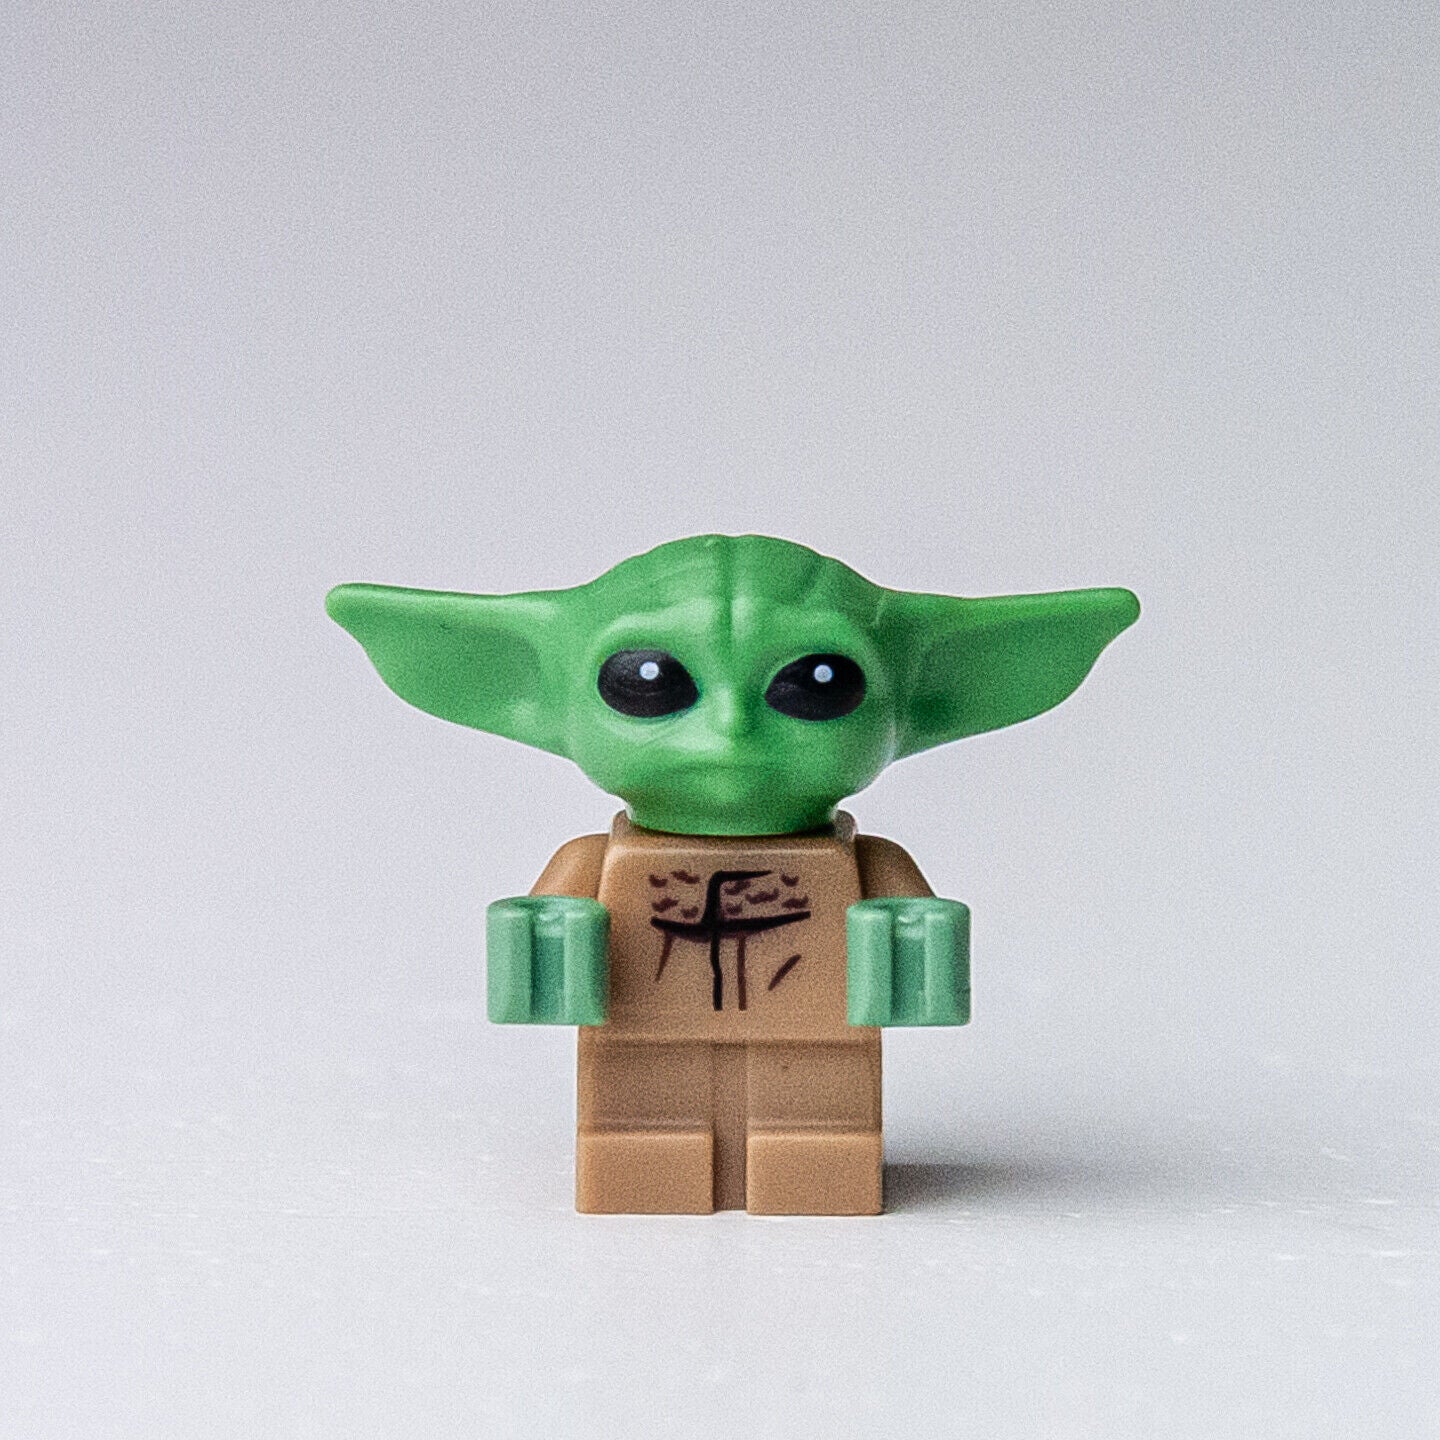 NEW Grogu / The Child / Baby Yoda - Star Wars (sw1113) LEGO Minifigure